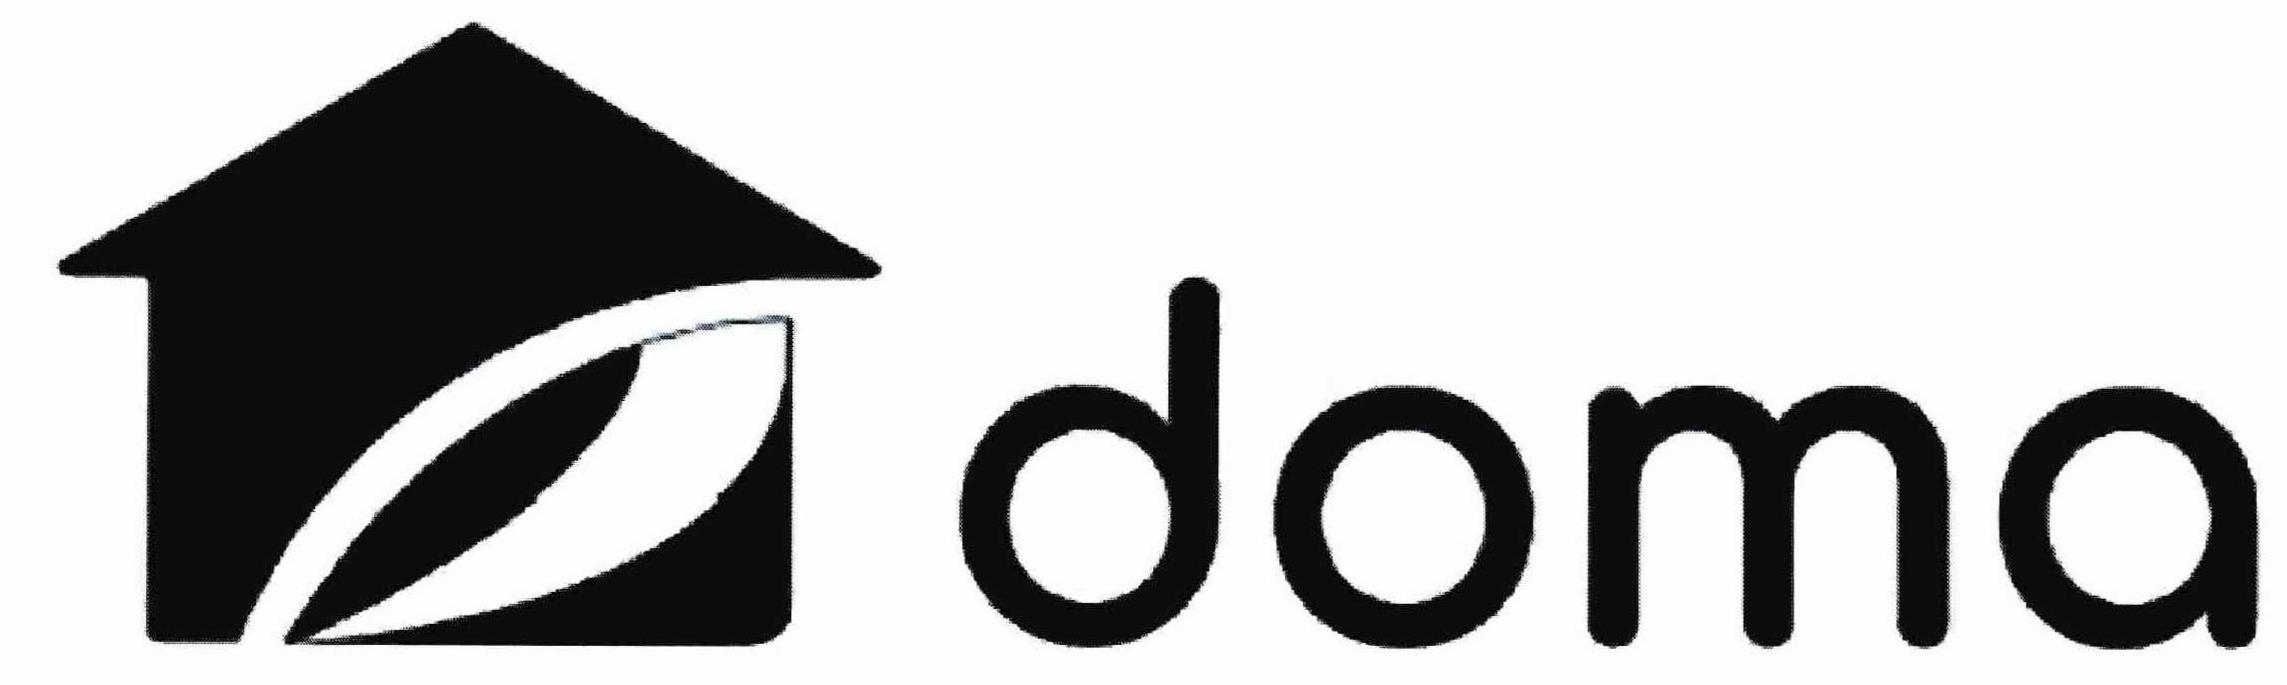 Trademark Logo DOMA